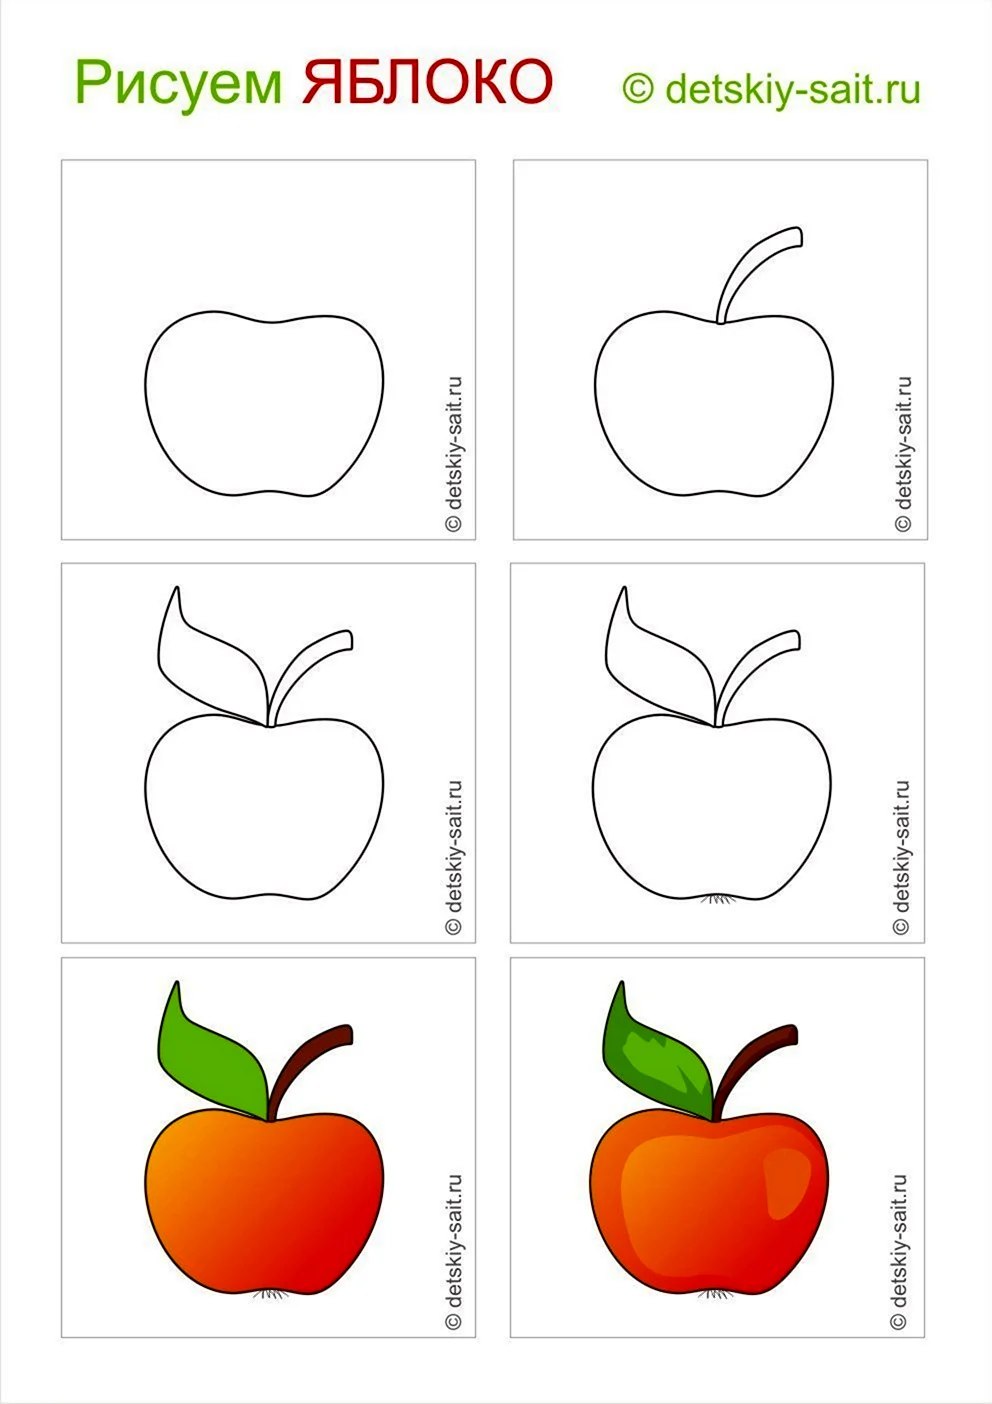 Схема рисования яблока для детей